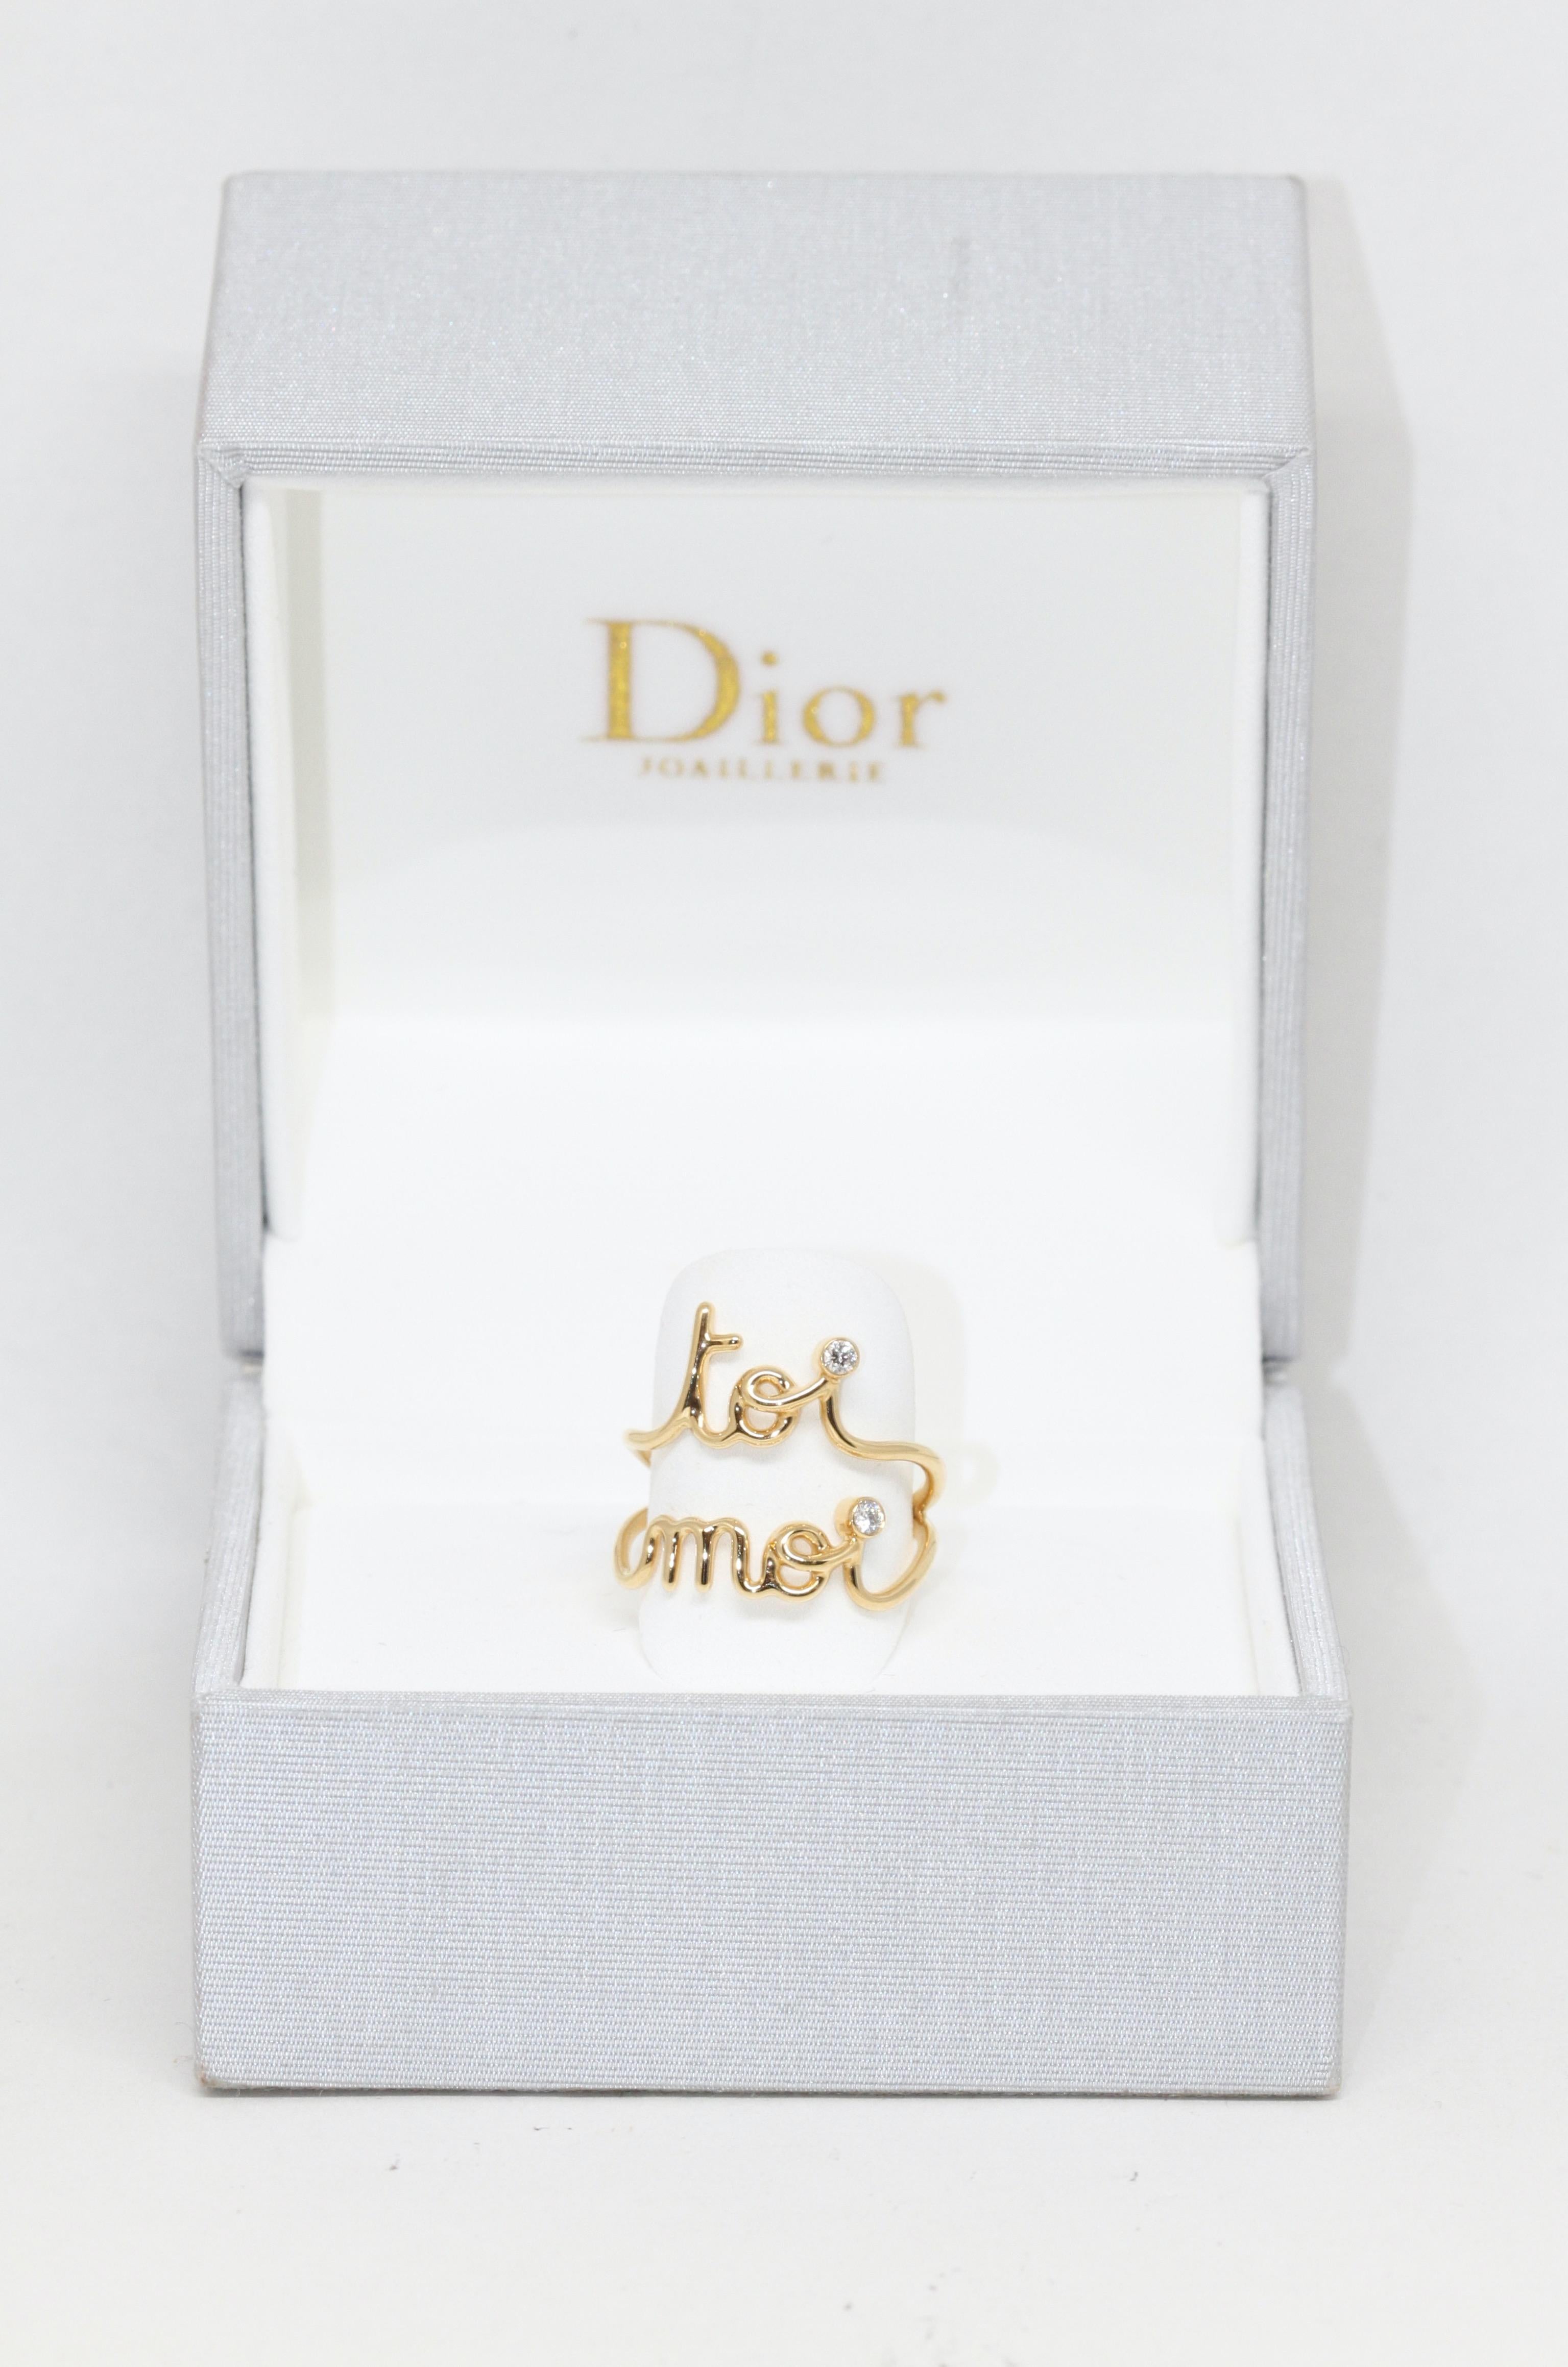 
Cette bague d'occasion de la maison Christian Dior est l'un des derniers modèles de la collection Oui. 
Créée en 2020 et réalisée en or jaune, cette bague est une ode à l'Amour !

Collection : Oui 
Matériau : or jaune 18K et diamant (environ 0,06